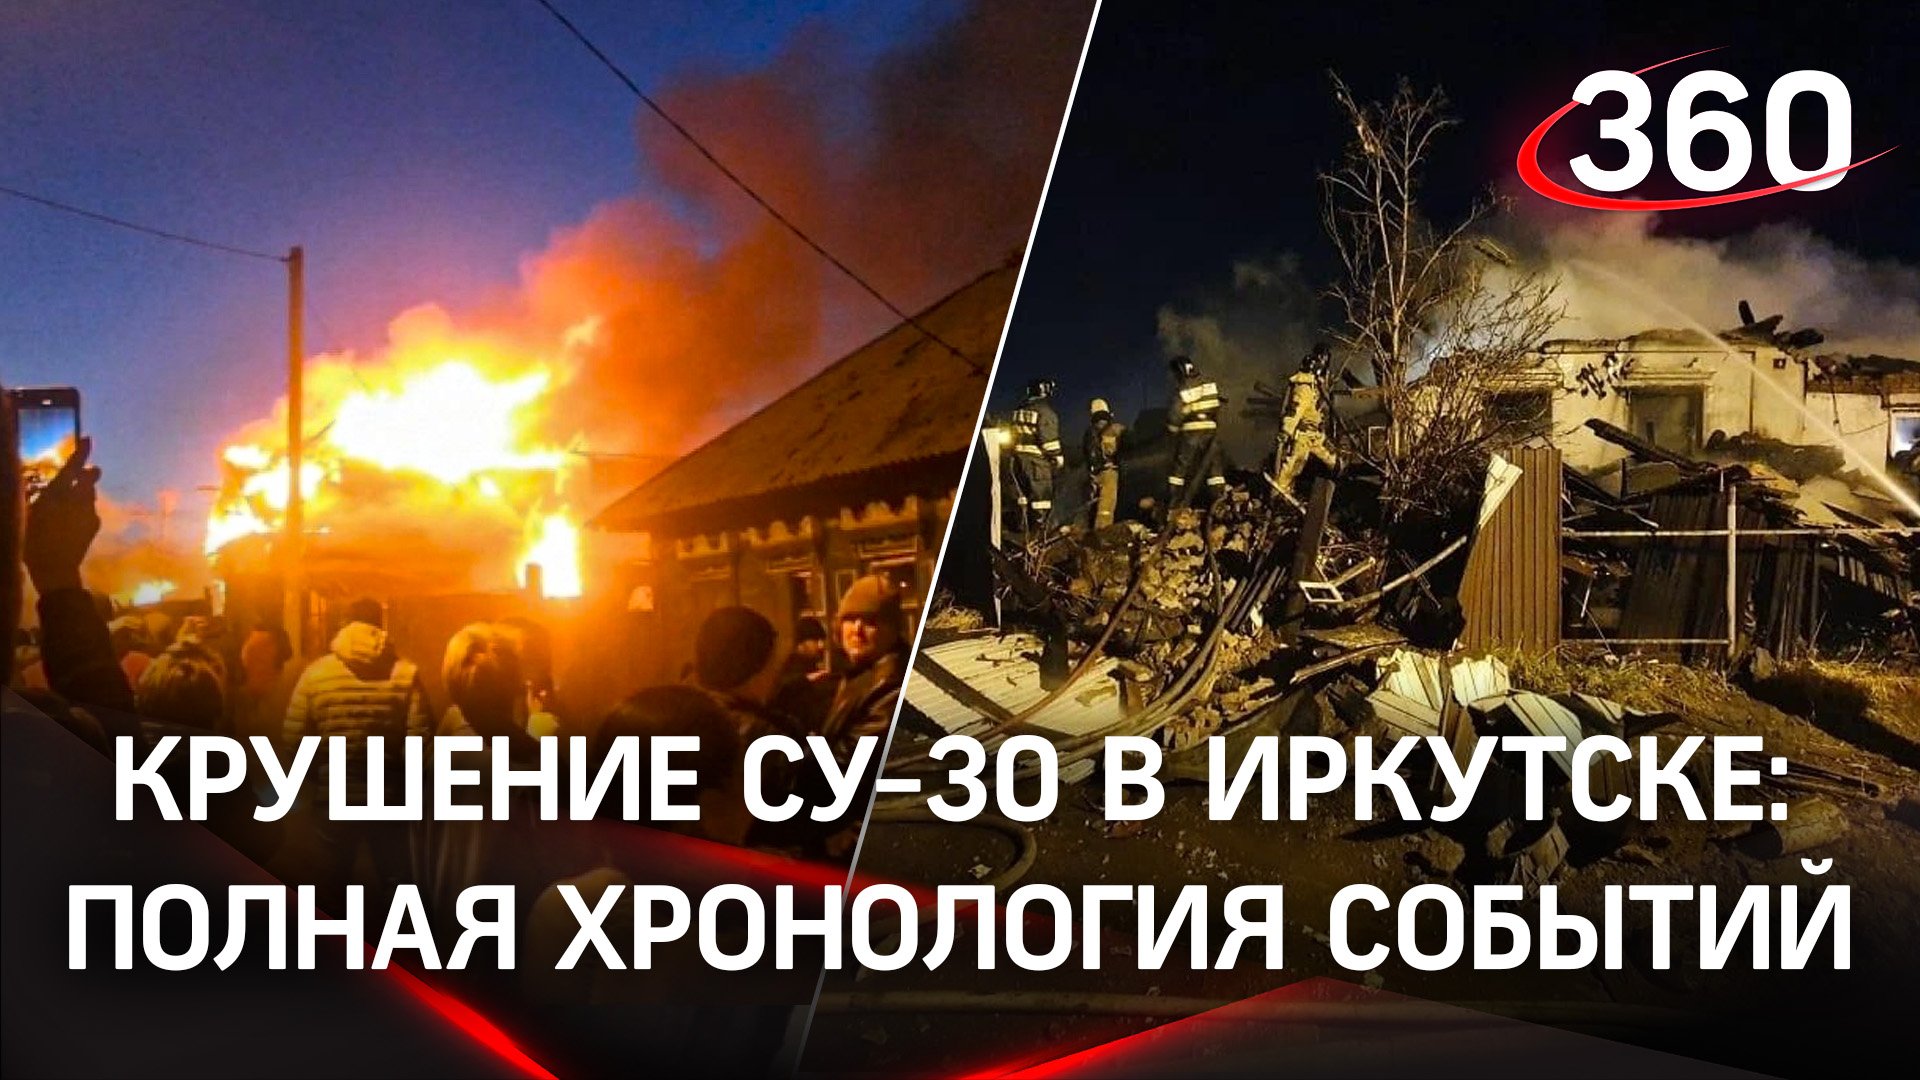 Крушение Су-30 в Иркутске: полная хронология событий. Видео ликвидации последствий